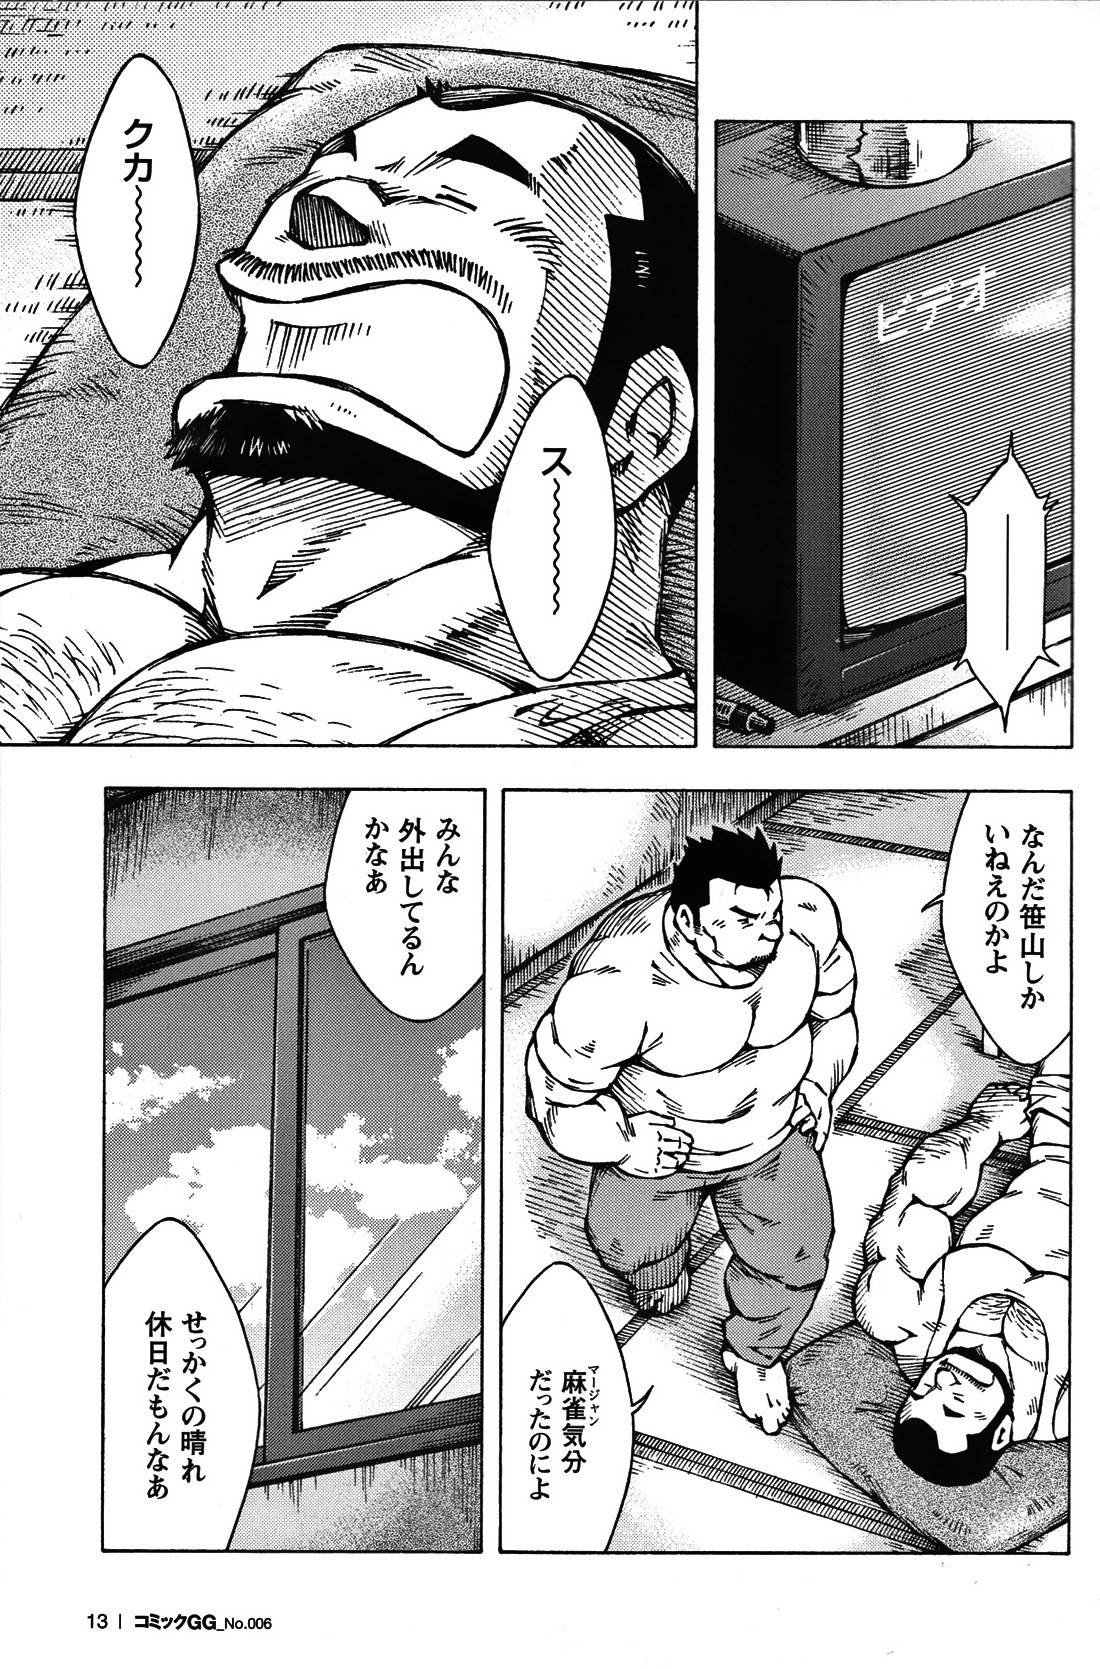 Comic G-men Gaho No. 06 Nikutai Roudousha page 12 full